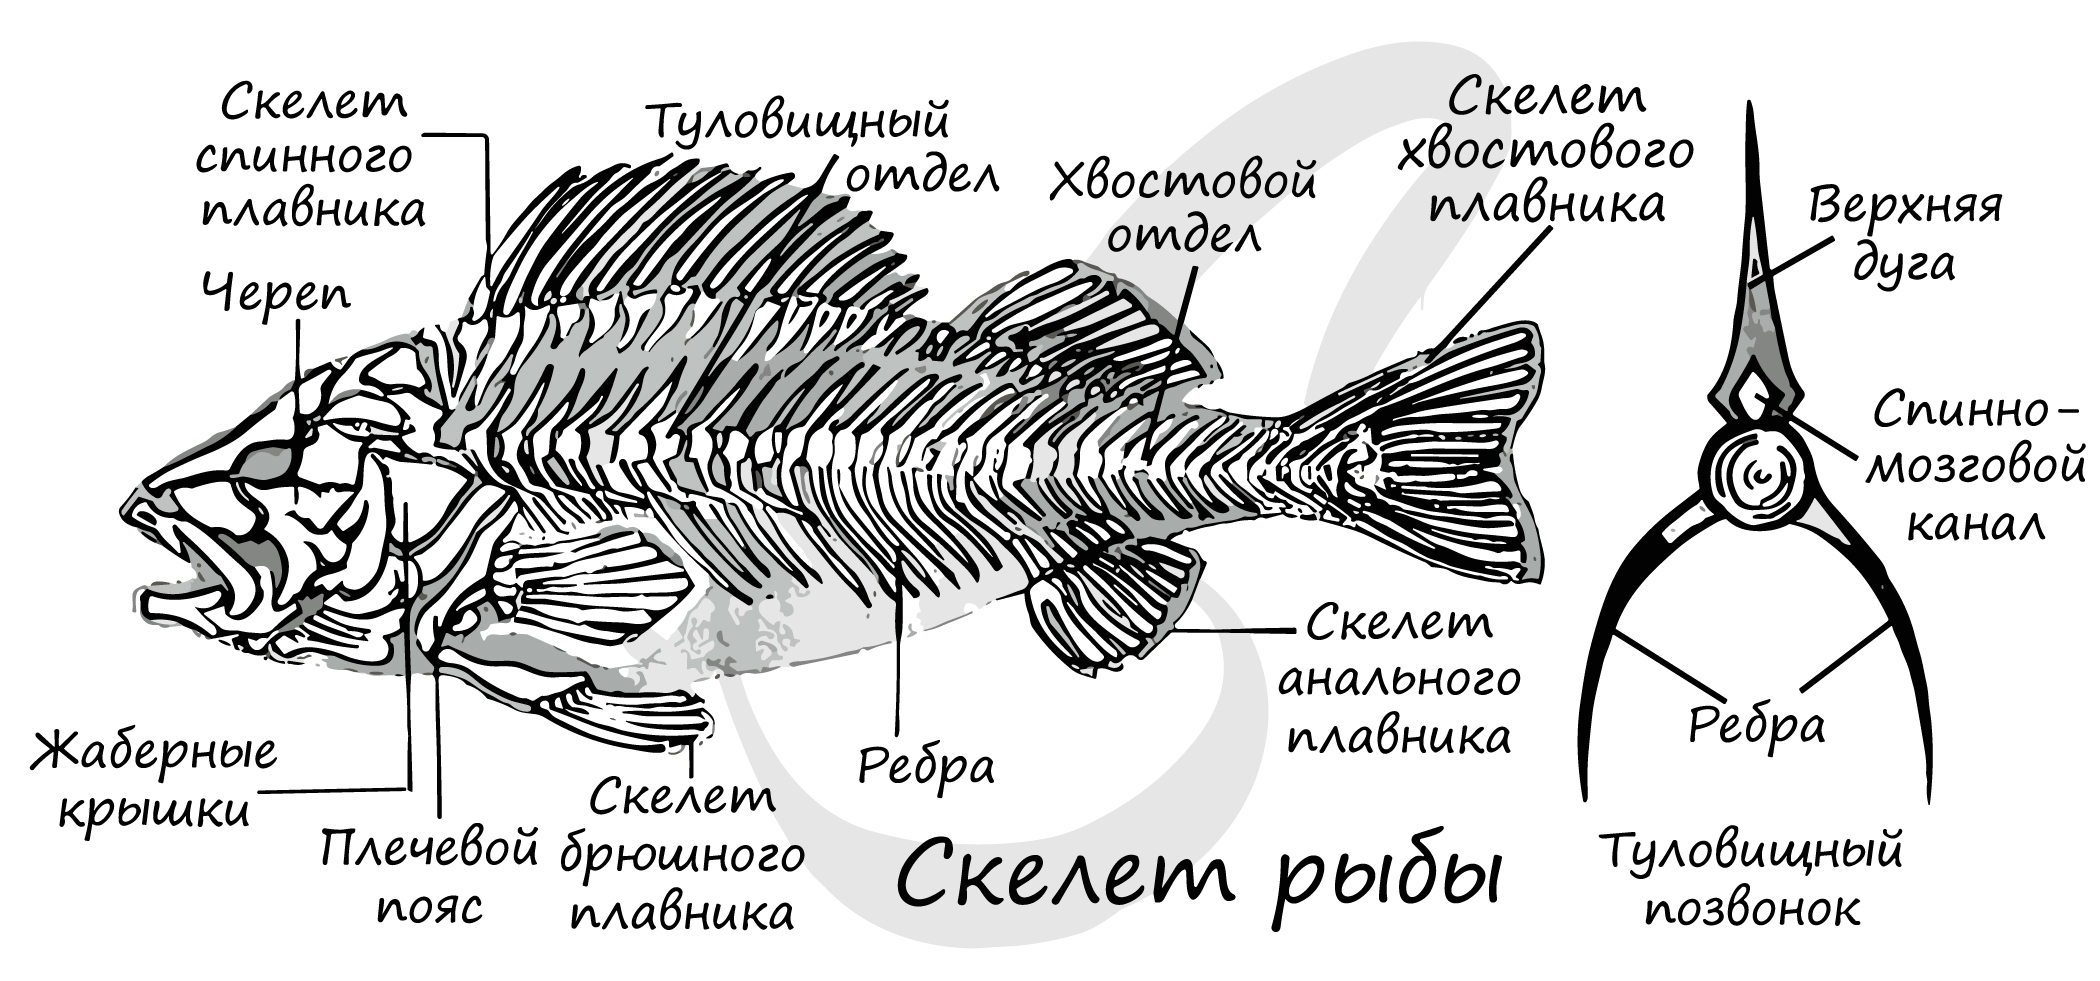 Скелет рыб 7 класс. Внутреннее строение костной рыбы скелет. Скелет костистой рыбы с подписями. Строение скелета костистой рыбы. Скелет костистой рыбы Речной окунь биология 7 класс.